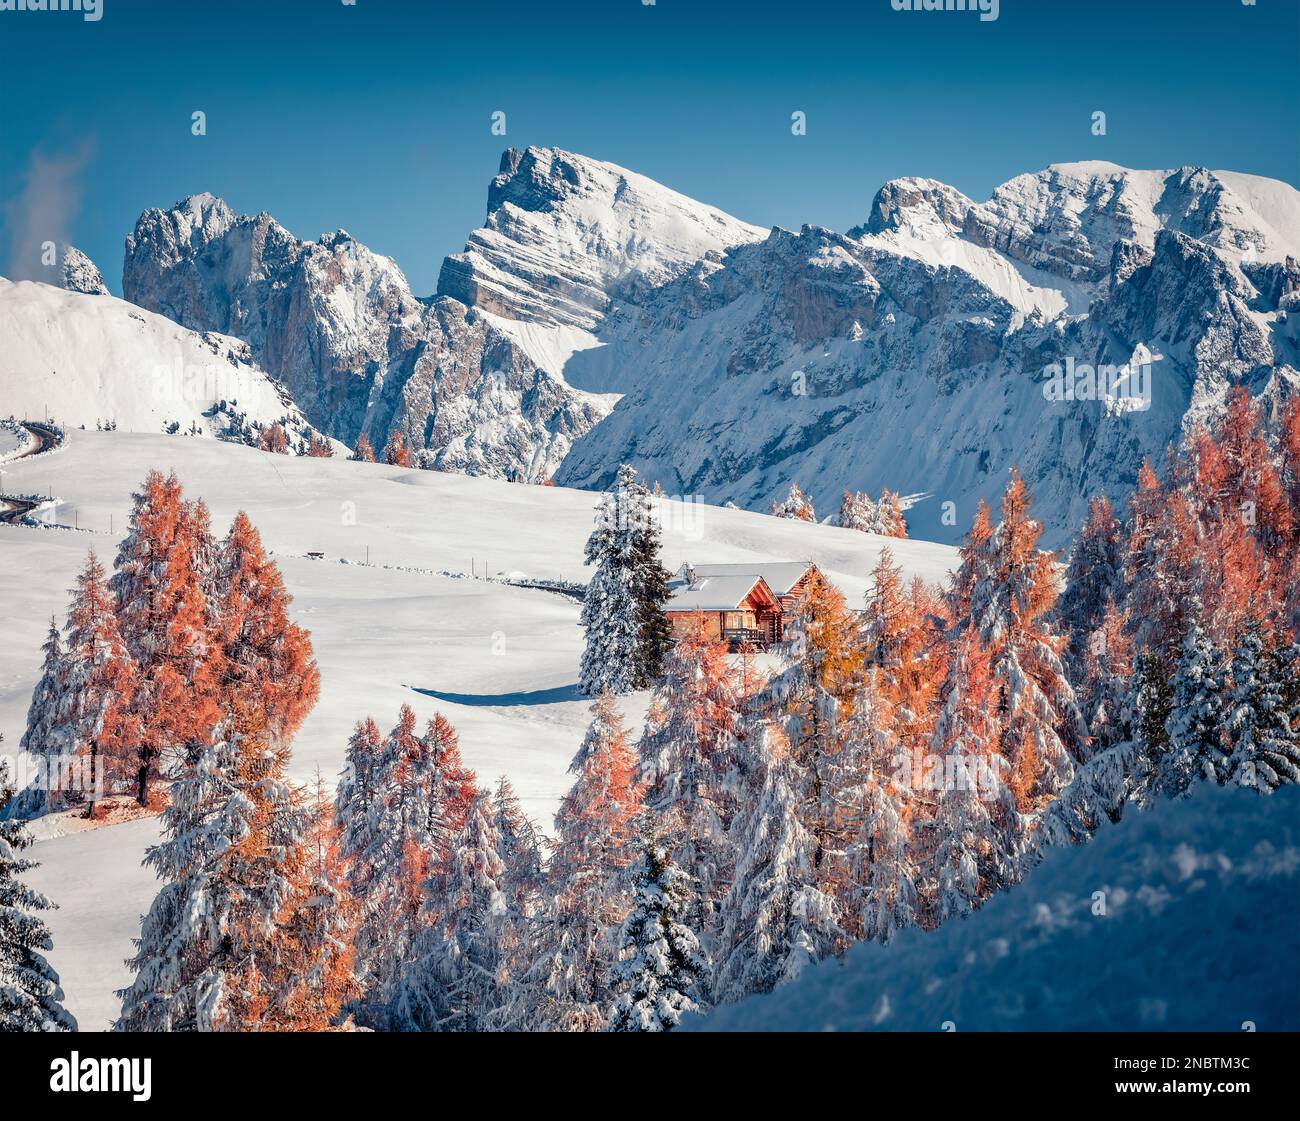 Zwei hölzerne Chalets im Bergtal. Fantastischer Blick am Morgen auf das Dorf Alpe di Siusi mit dem Furchetta-Gipfel im Hintergrund. Atemberaubende Winterszene von Dolom Stockfoto